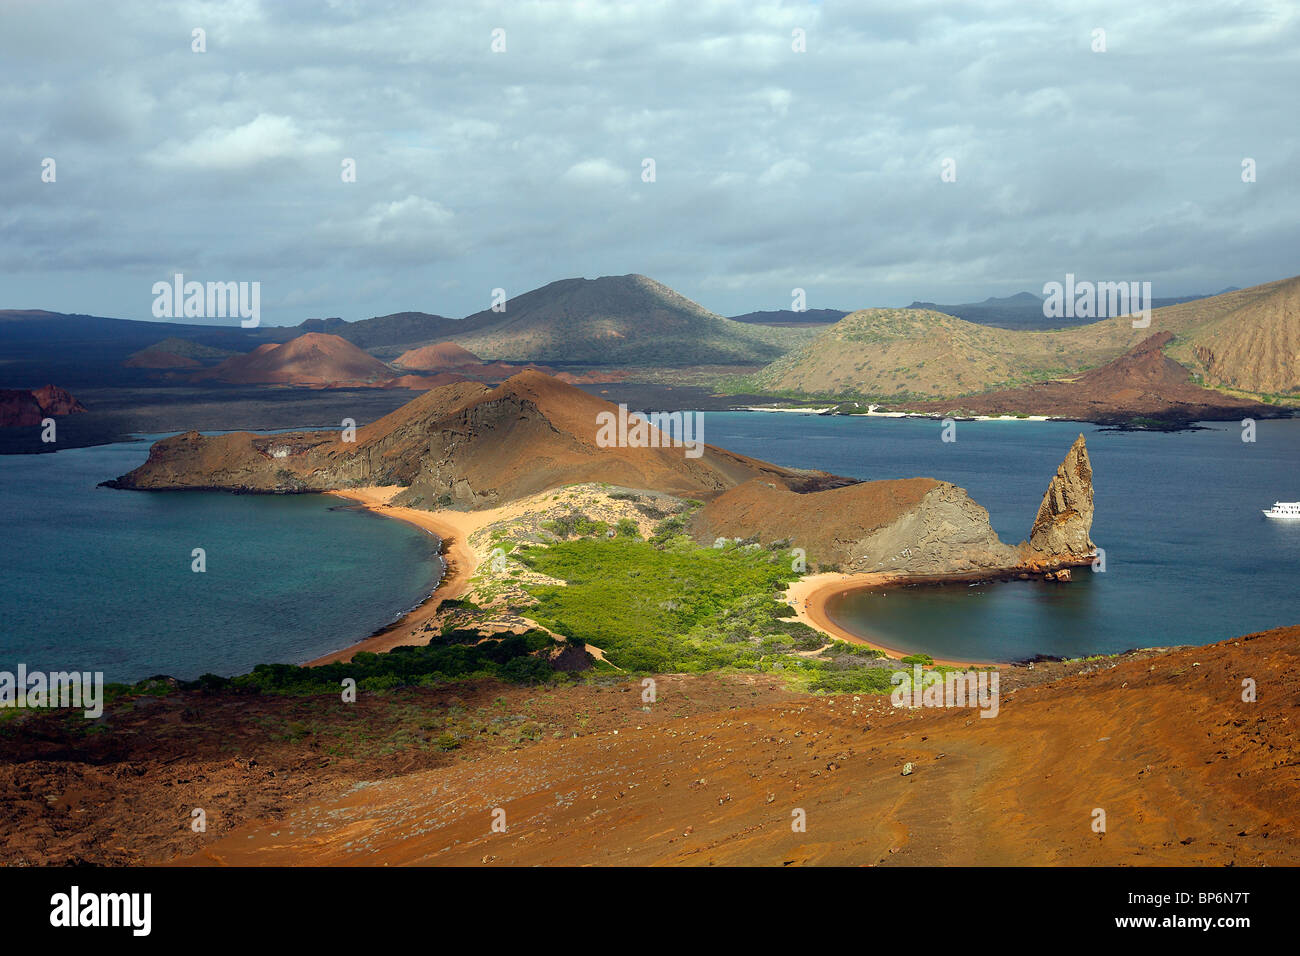 Vista di Bartolome Isola con pinnacolo di roccia, Galapagos. Foto Stock